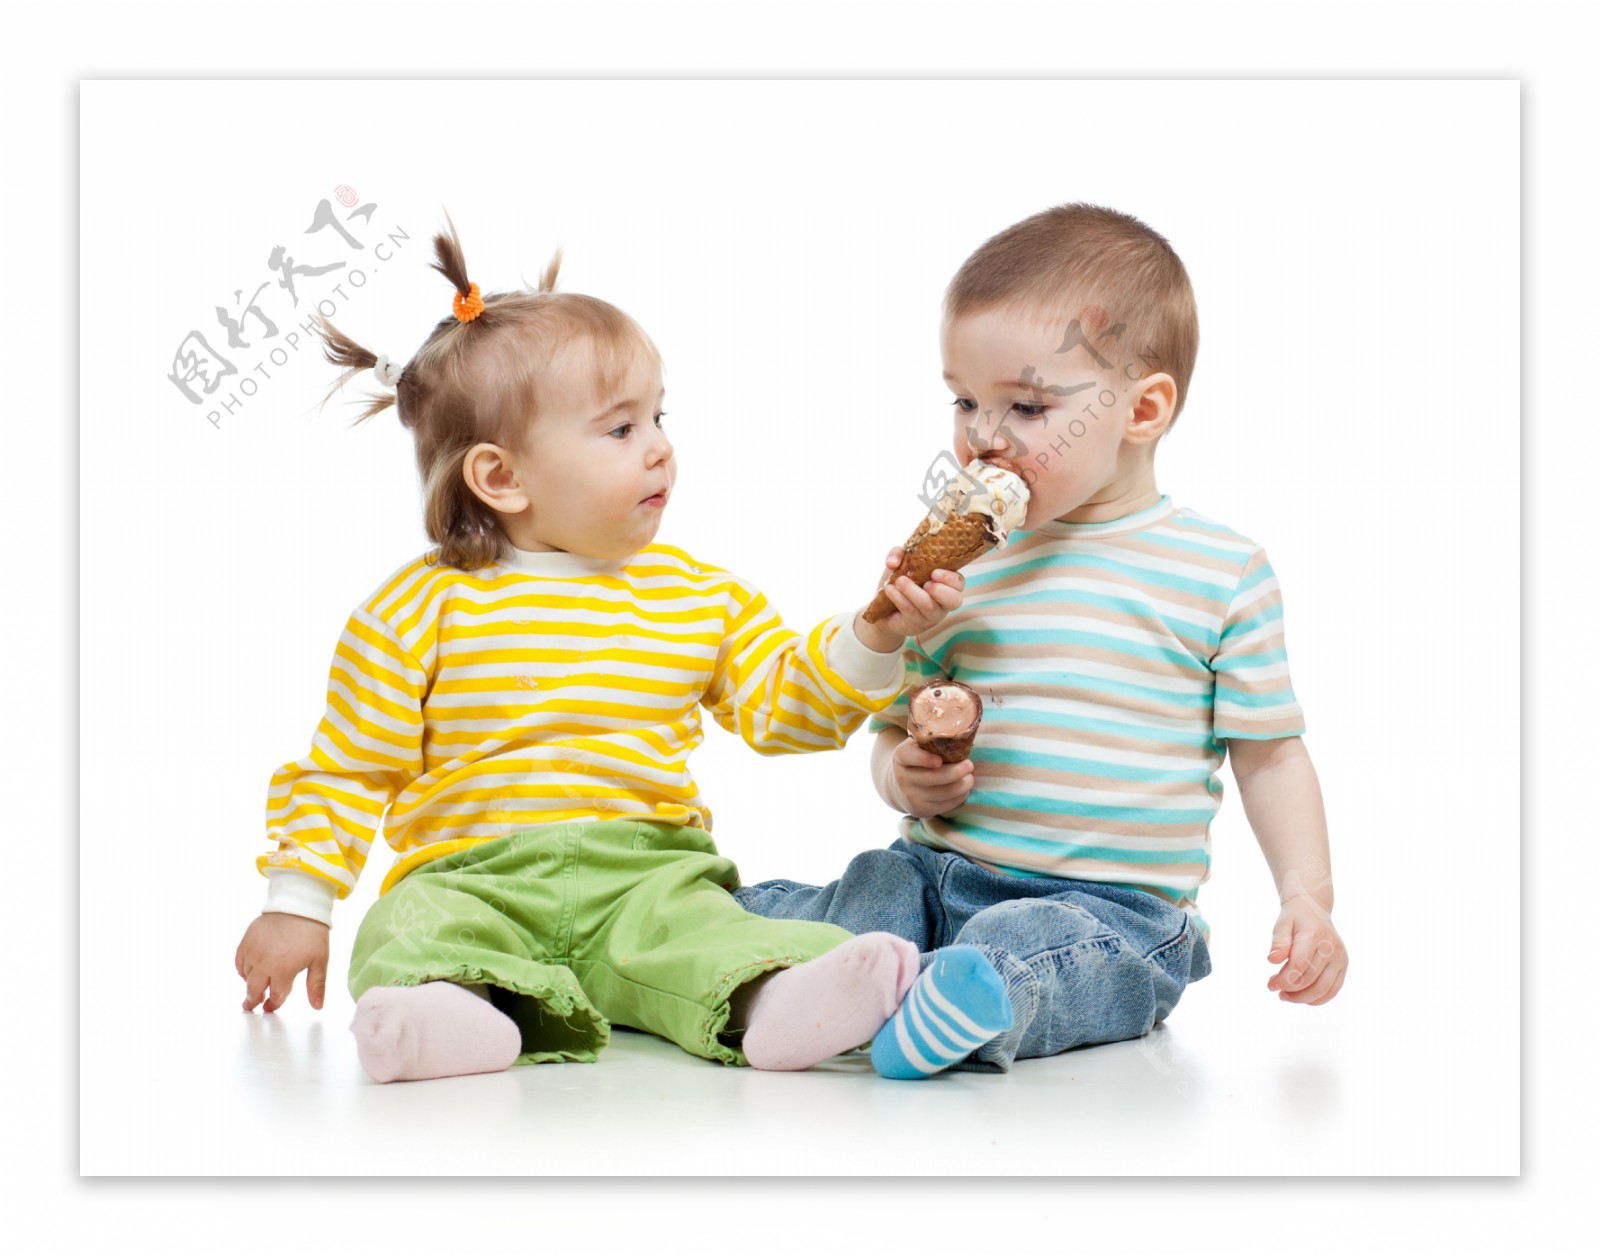 吃冰激凌的两个宝宝图片